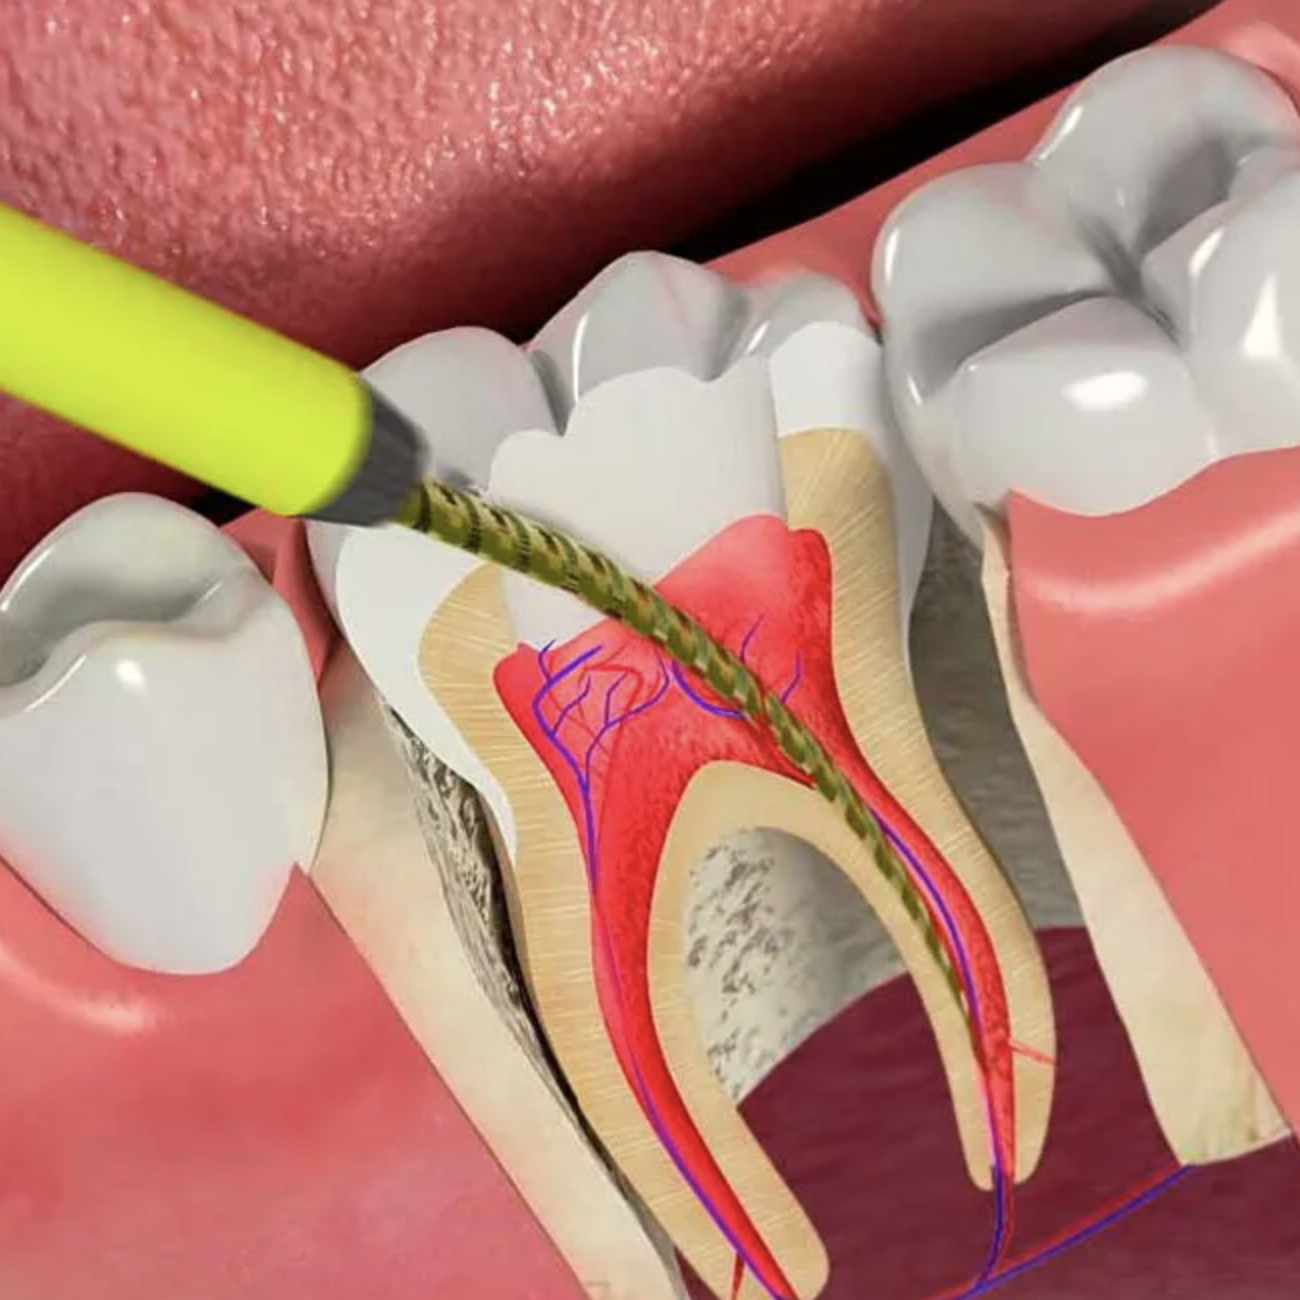 Временное пломбирование корневых. Эндодонтия в стоматологии.